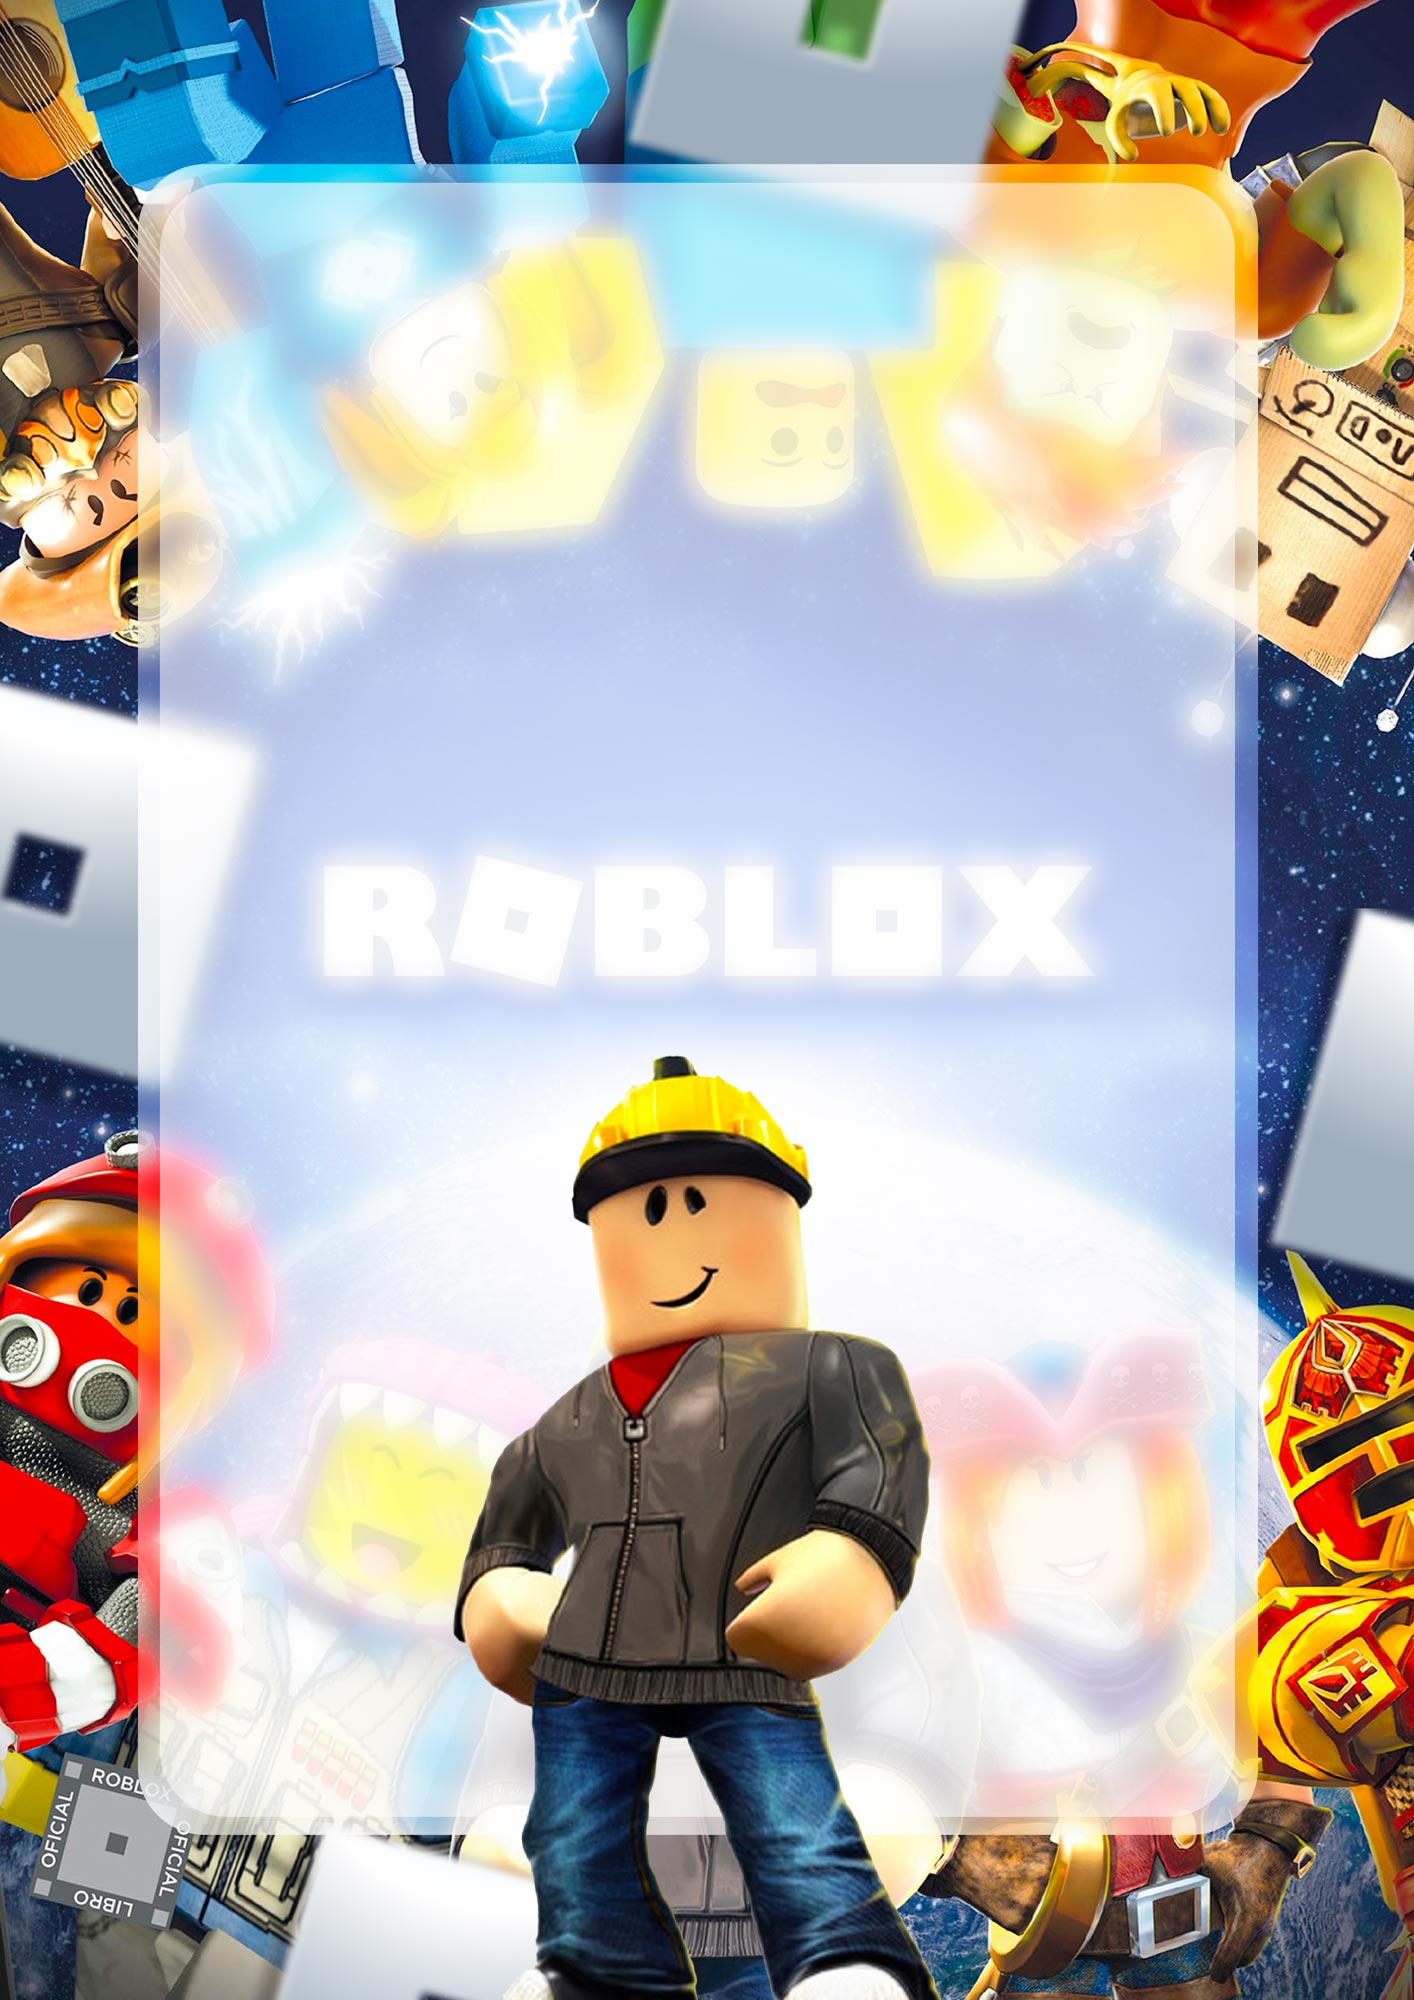 Capa de Caderno Personalizada Roblox